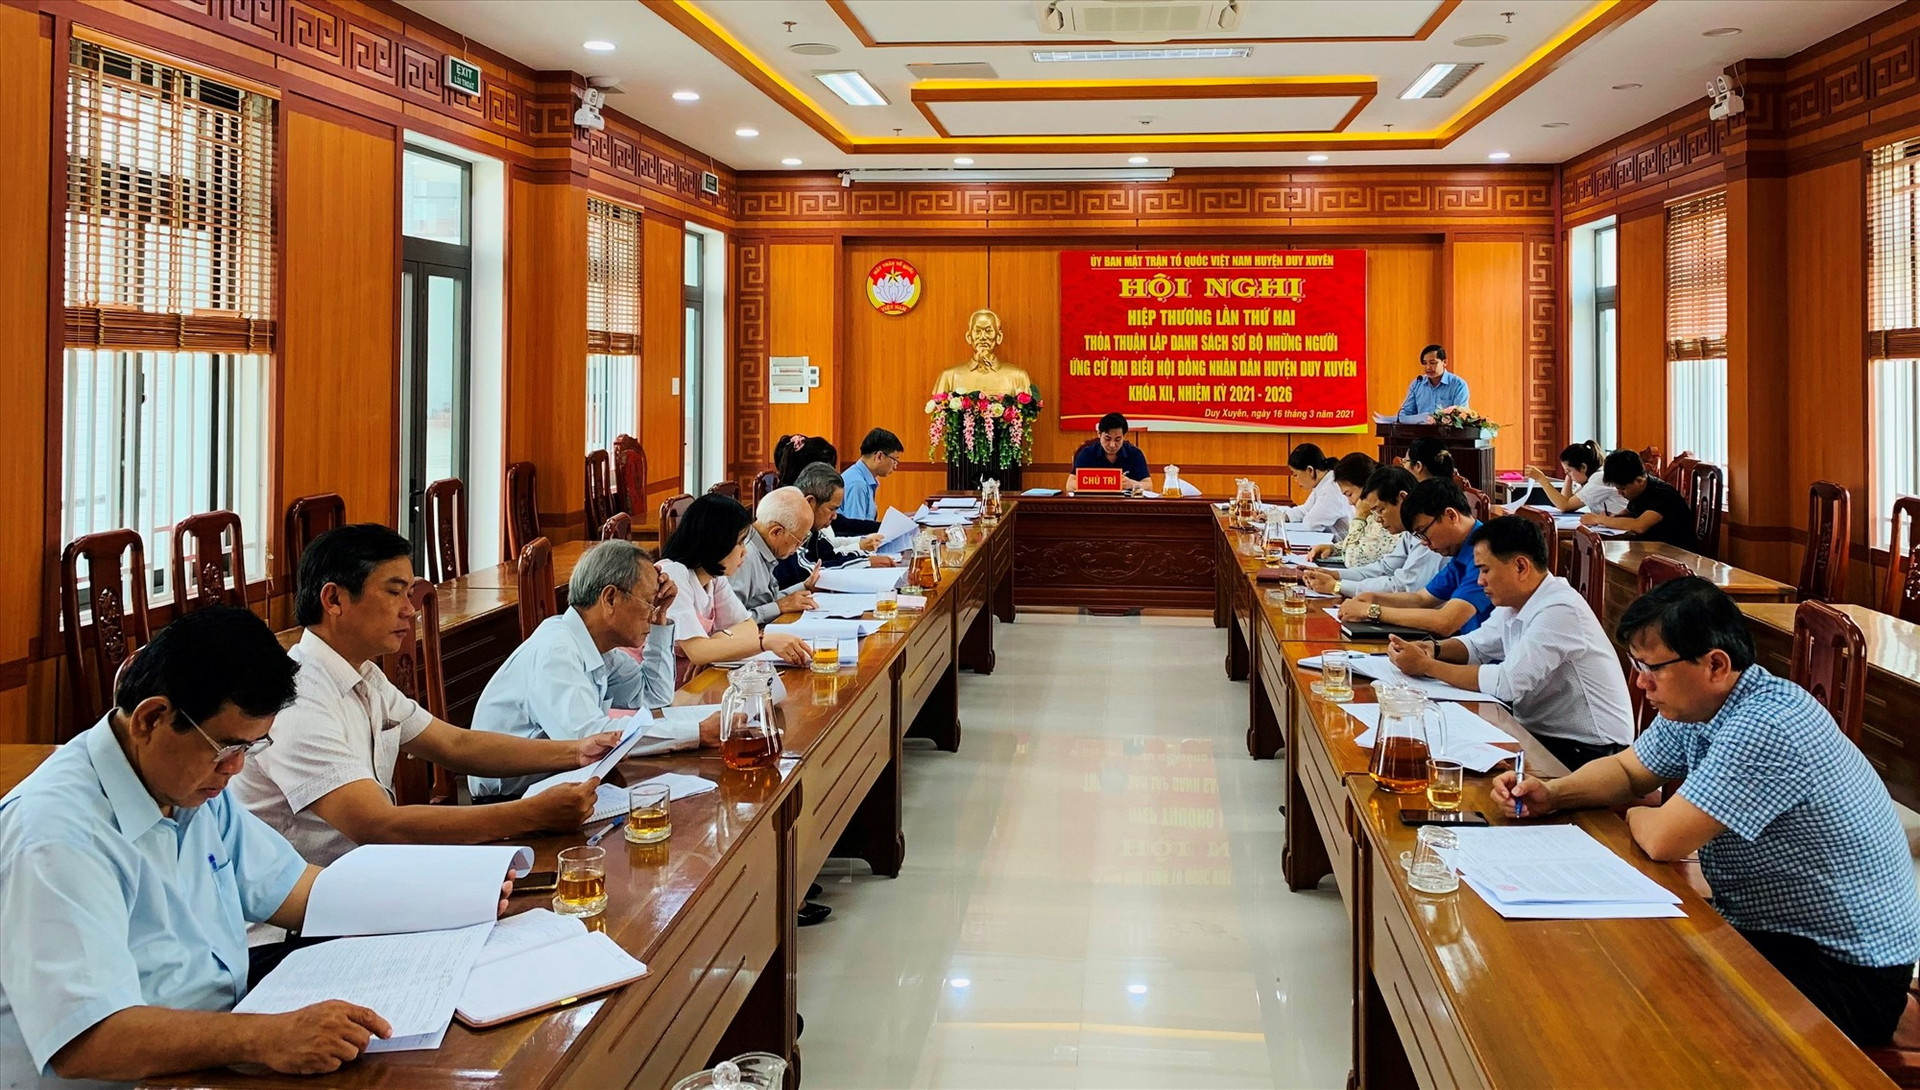 Ủy ban MTTQ Việt Nam huyện Duy Xuyên tổ chức hội nghị hiệp thương lần thứ hai hôm 16.3. Ảnh: T.L